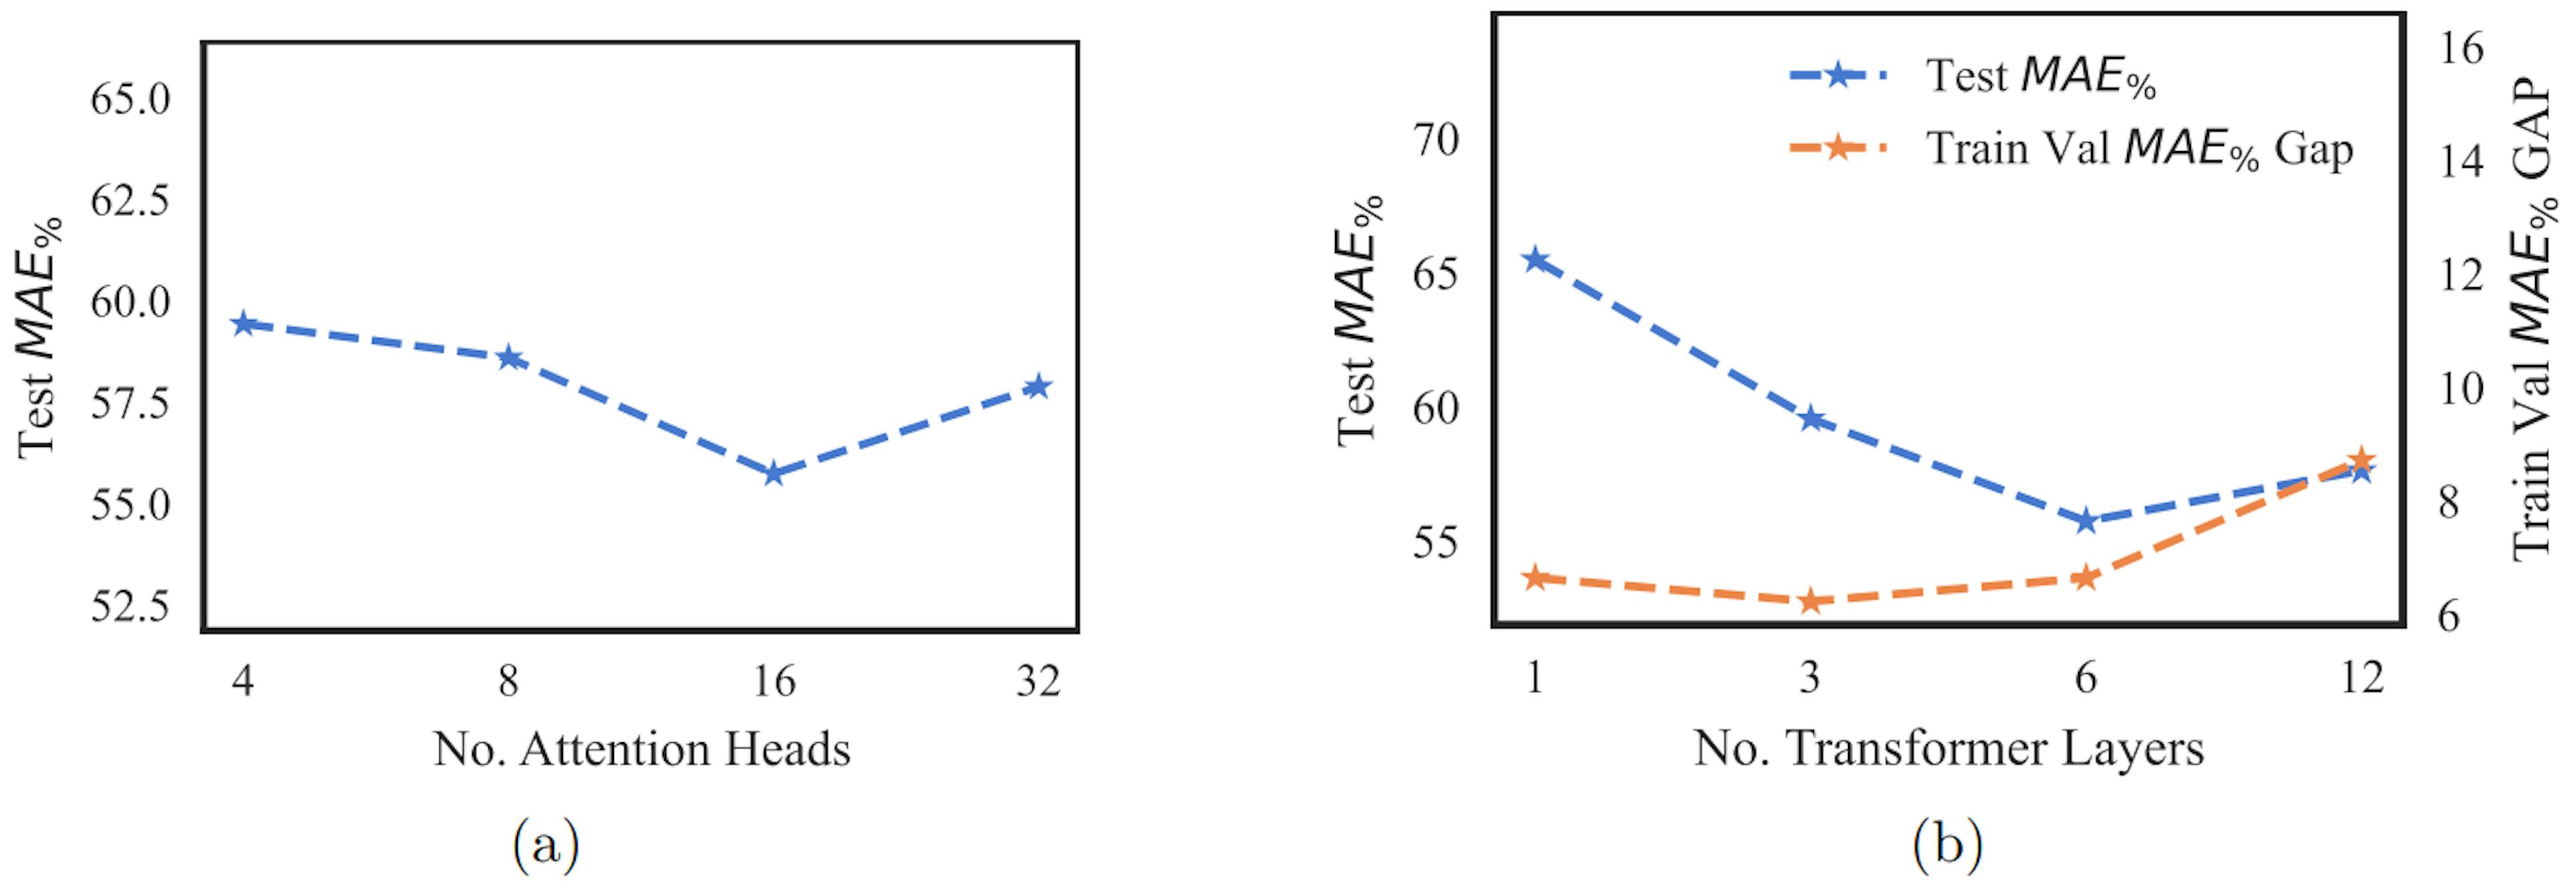 图 2：图 a 绘制了测试 MAE% 与注意力头数量的关系。图 b 绘制了测试 MAE% 和训练验证 MAE% 差距与 transformer 层数的关系。MAE% 的计算方法如公式 4 所示。